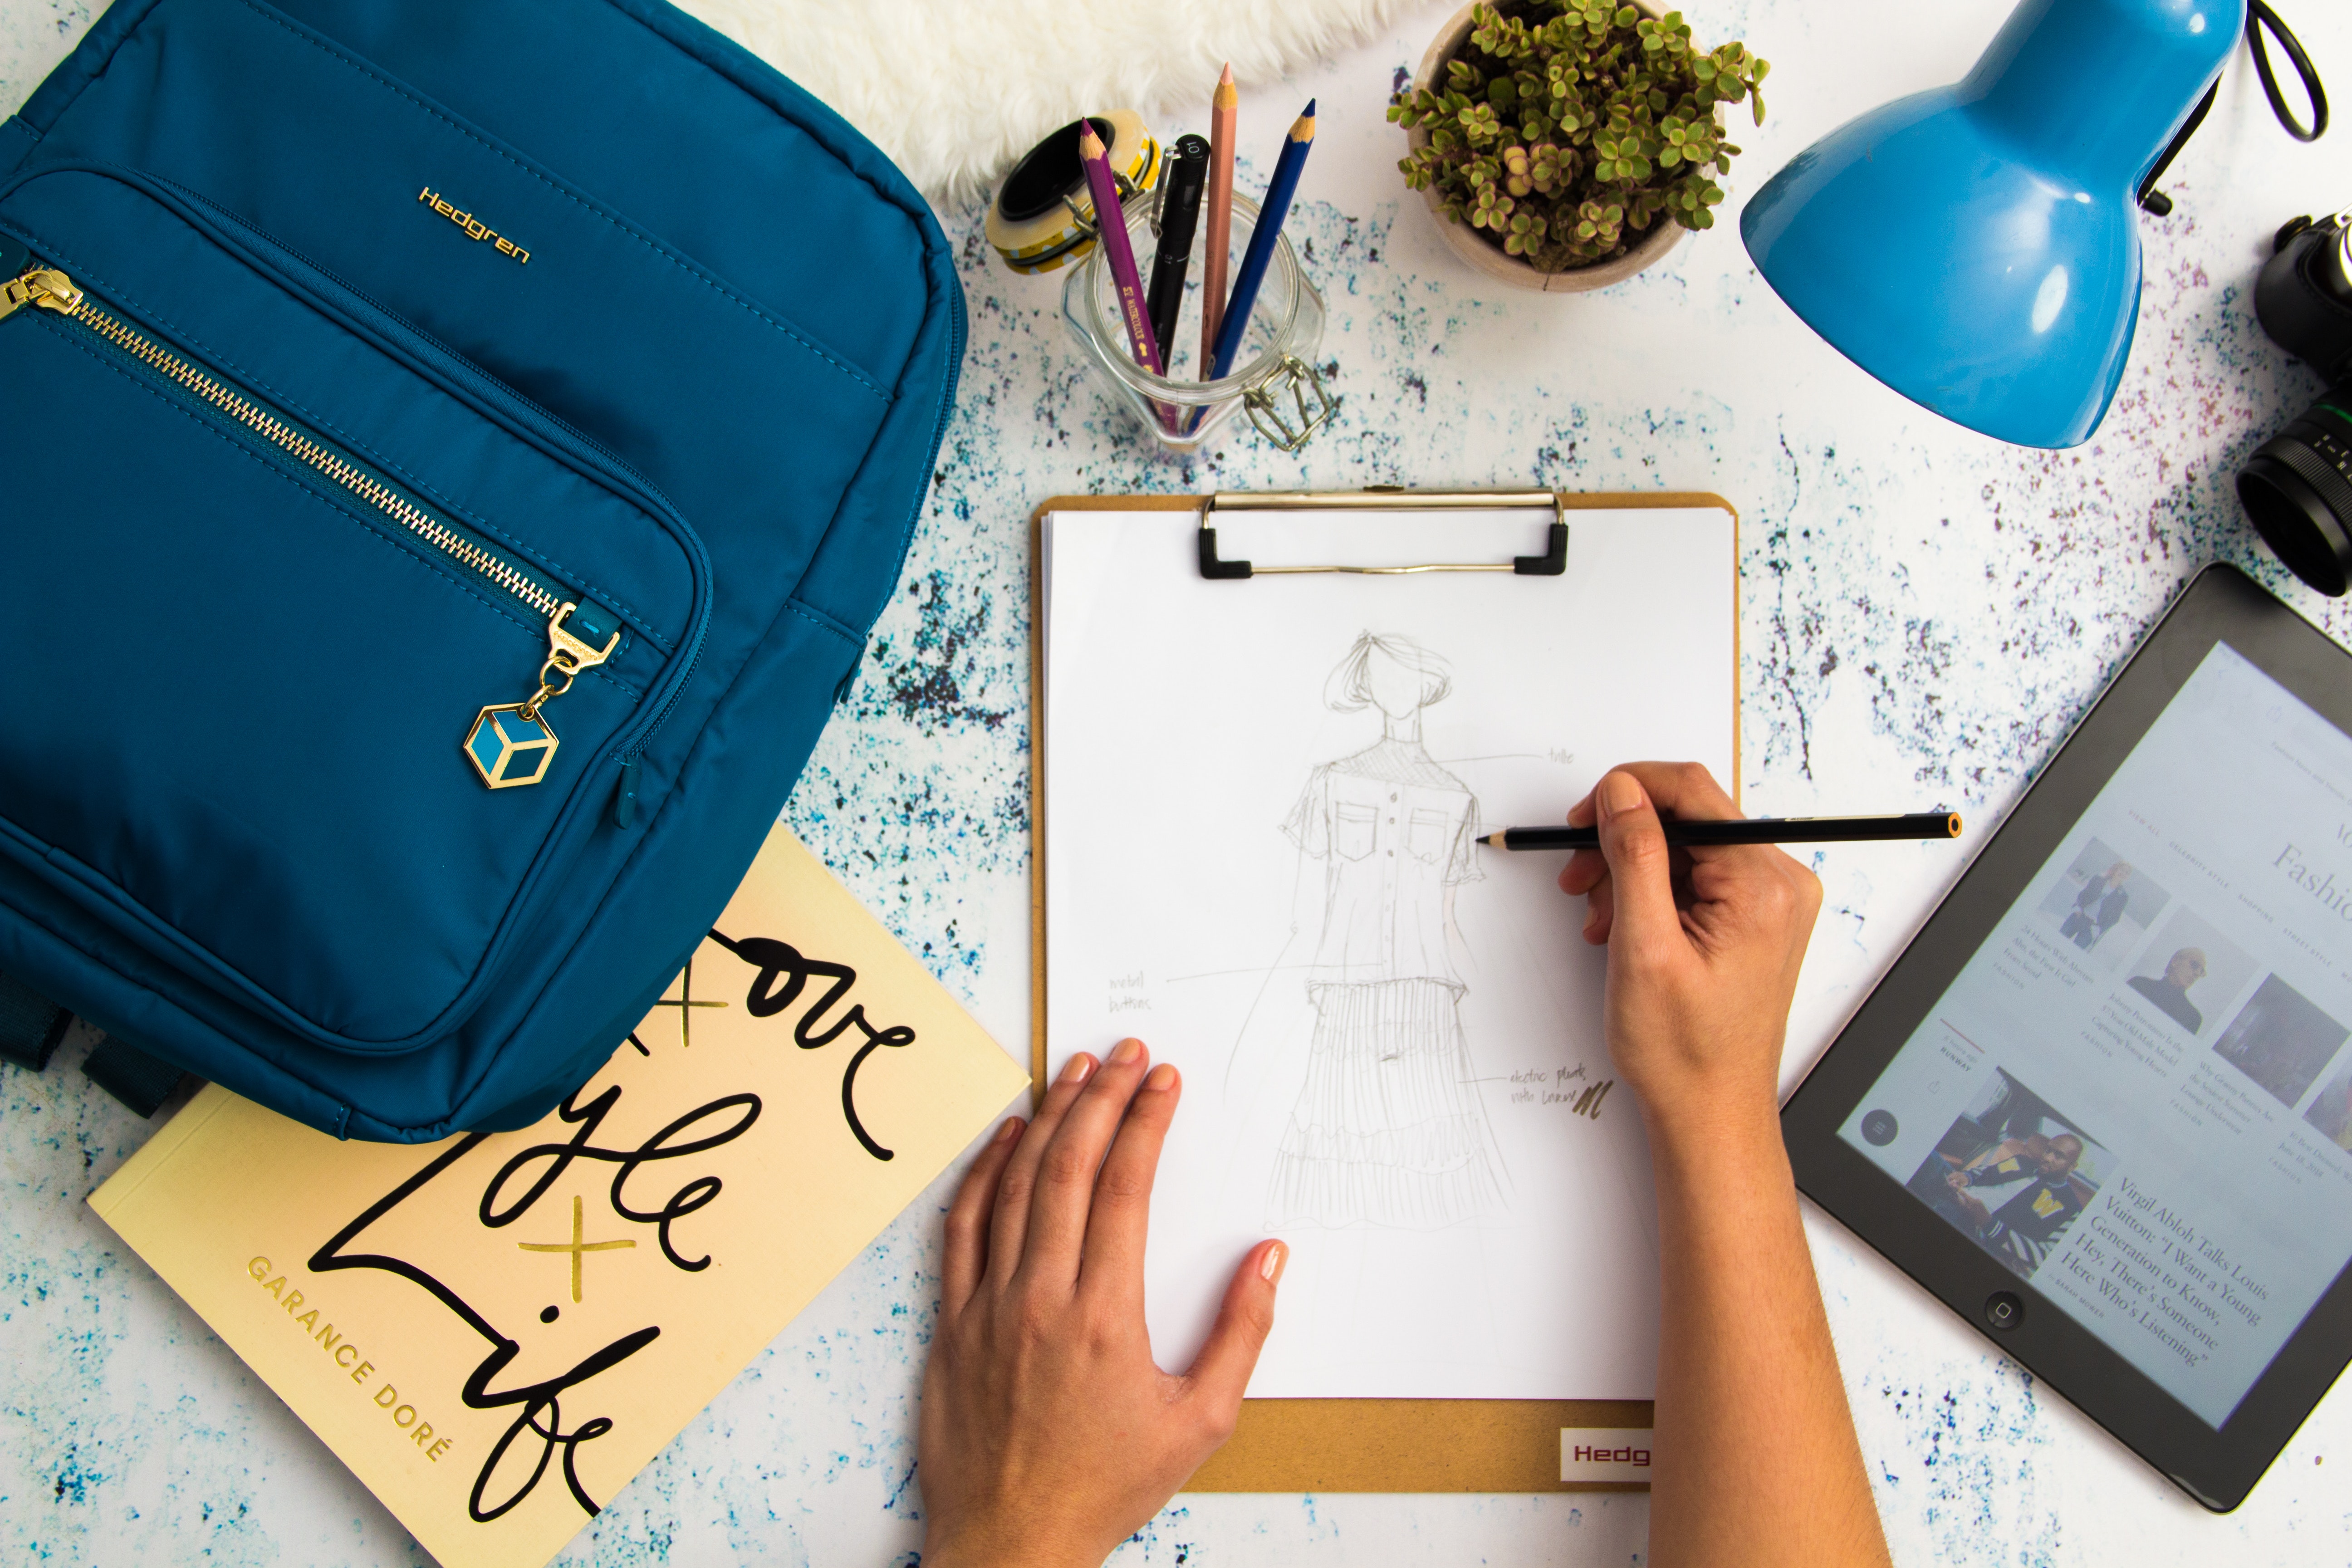 Escritorio con una mochila azul, un flexo azul, una agenda y unas manos diseñando un patrón de moda sobre un folio.